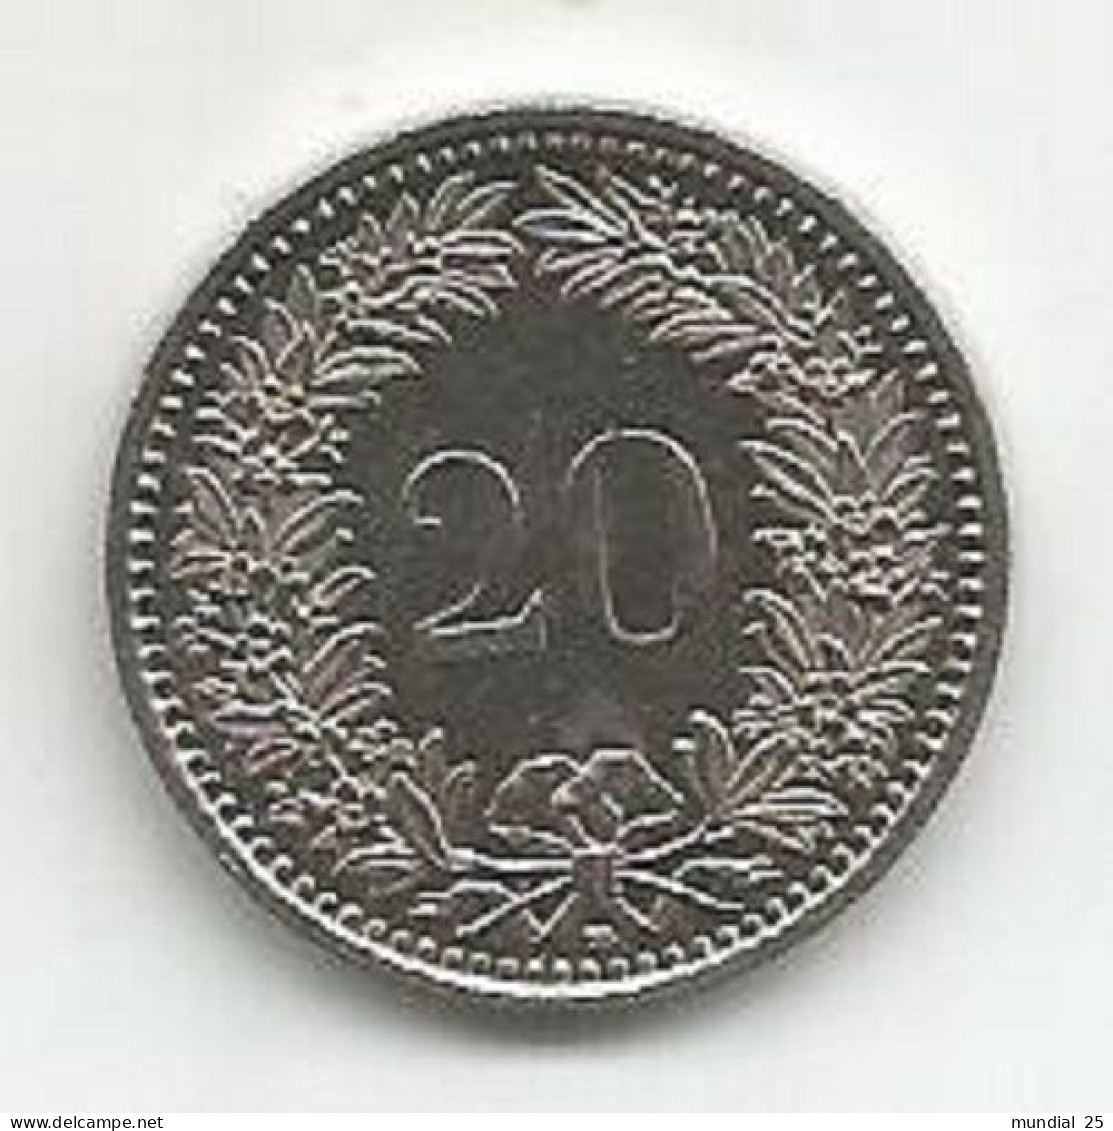 SWITZERLAND 20 RAPPEN 1991 B - 20 Centimes / Rappen